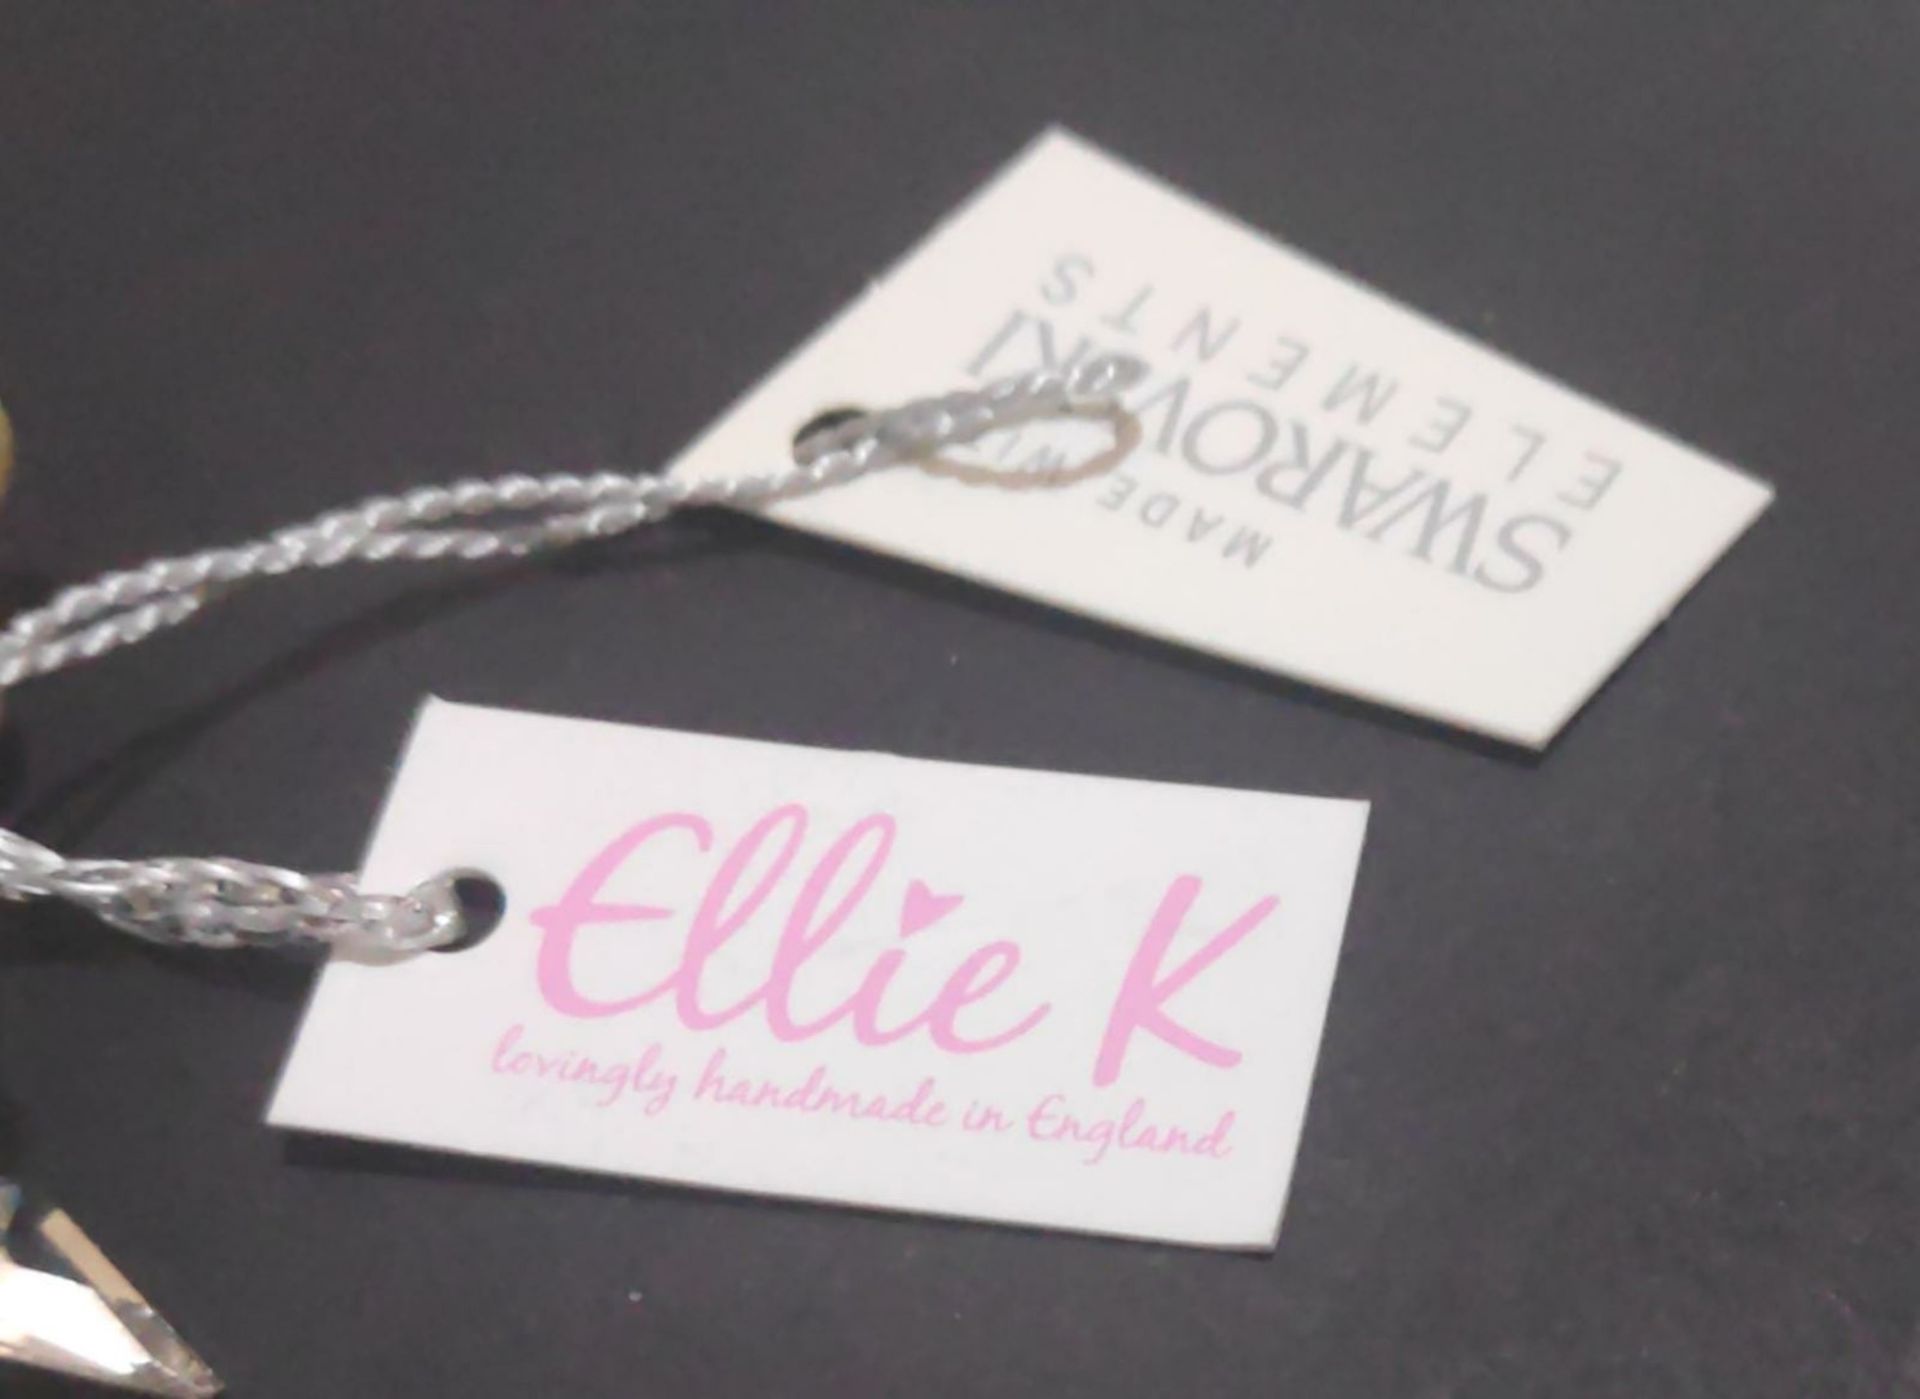 1 x  ELLIE K Elegant Aspen Crystal Side Tiara Featuring Swarovski Crystal & Ivory Pearls - RRP £69. - Image 4 of 5